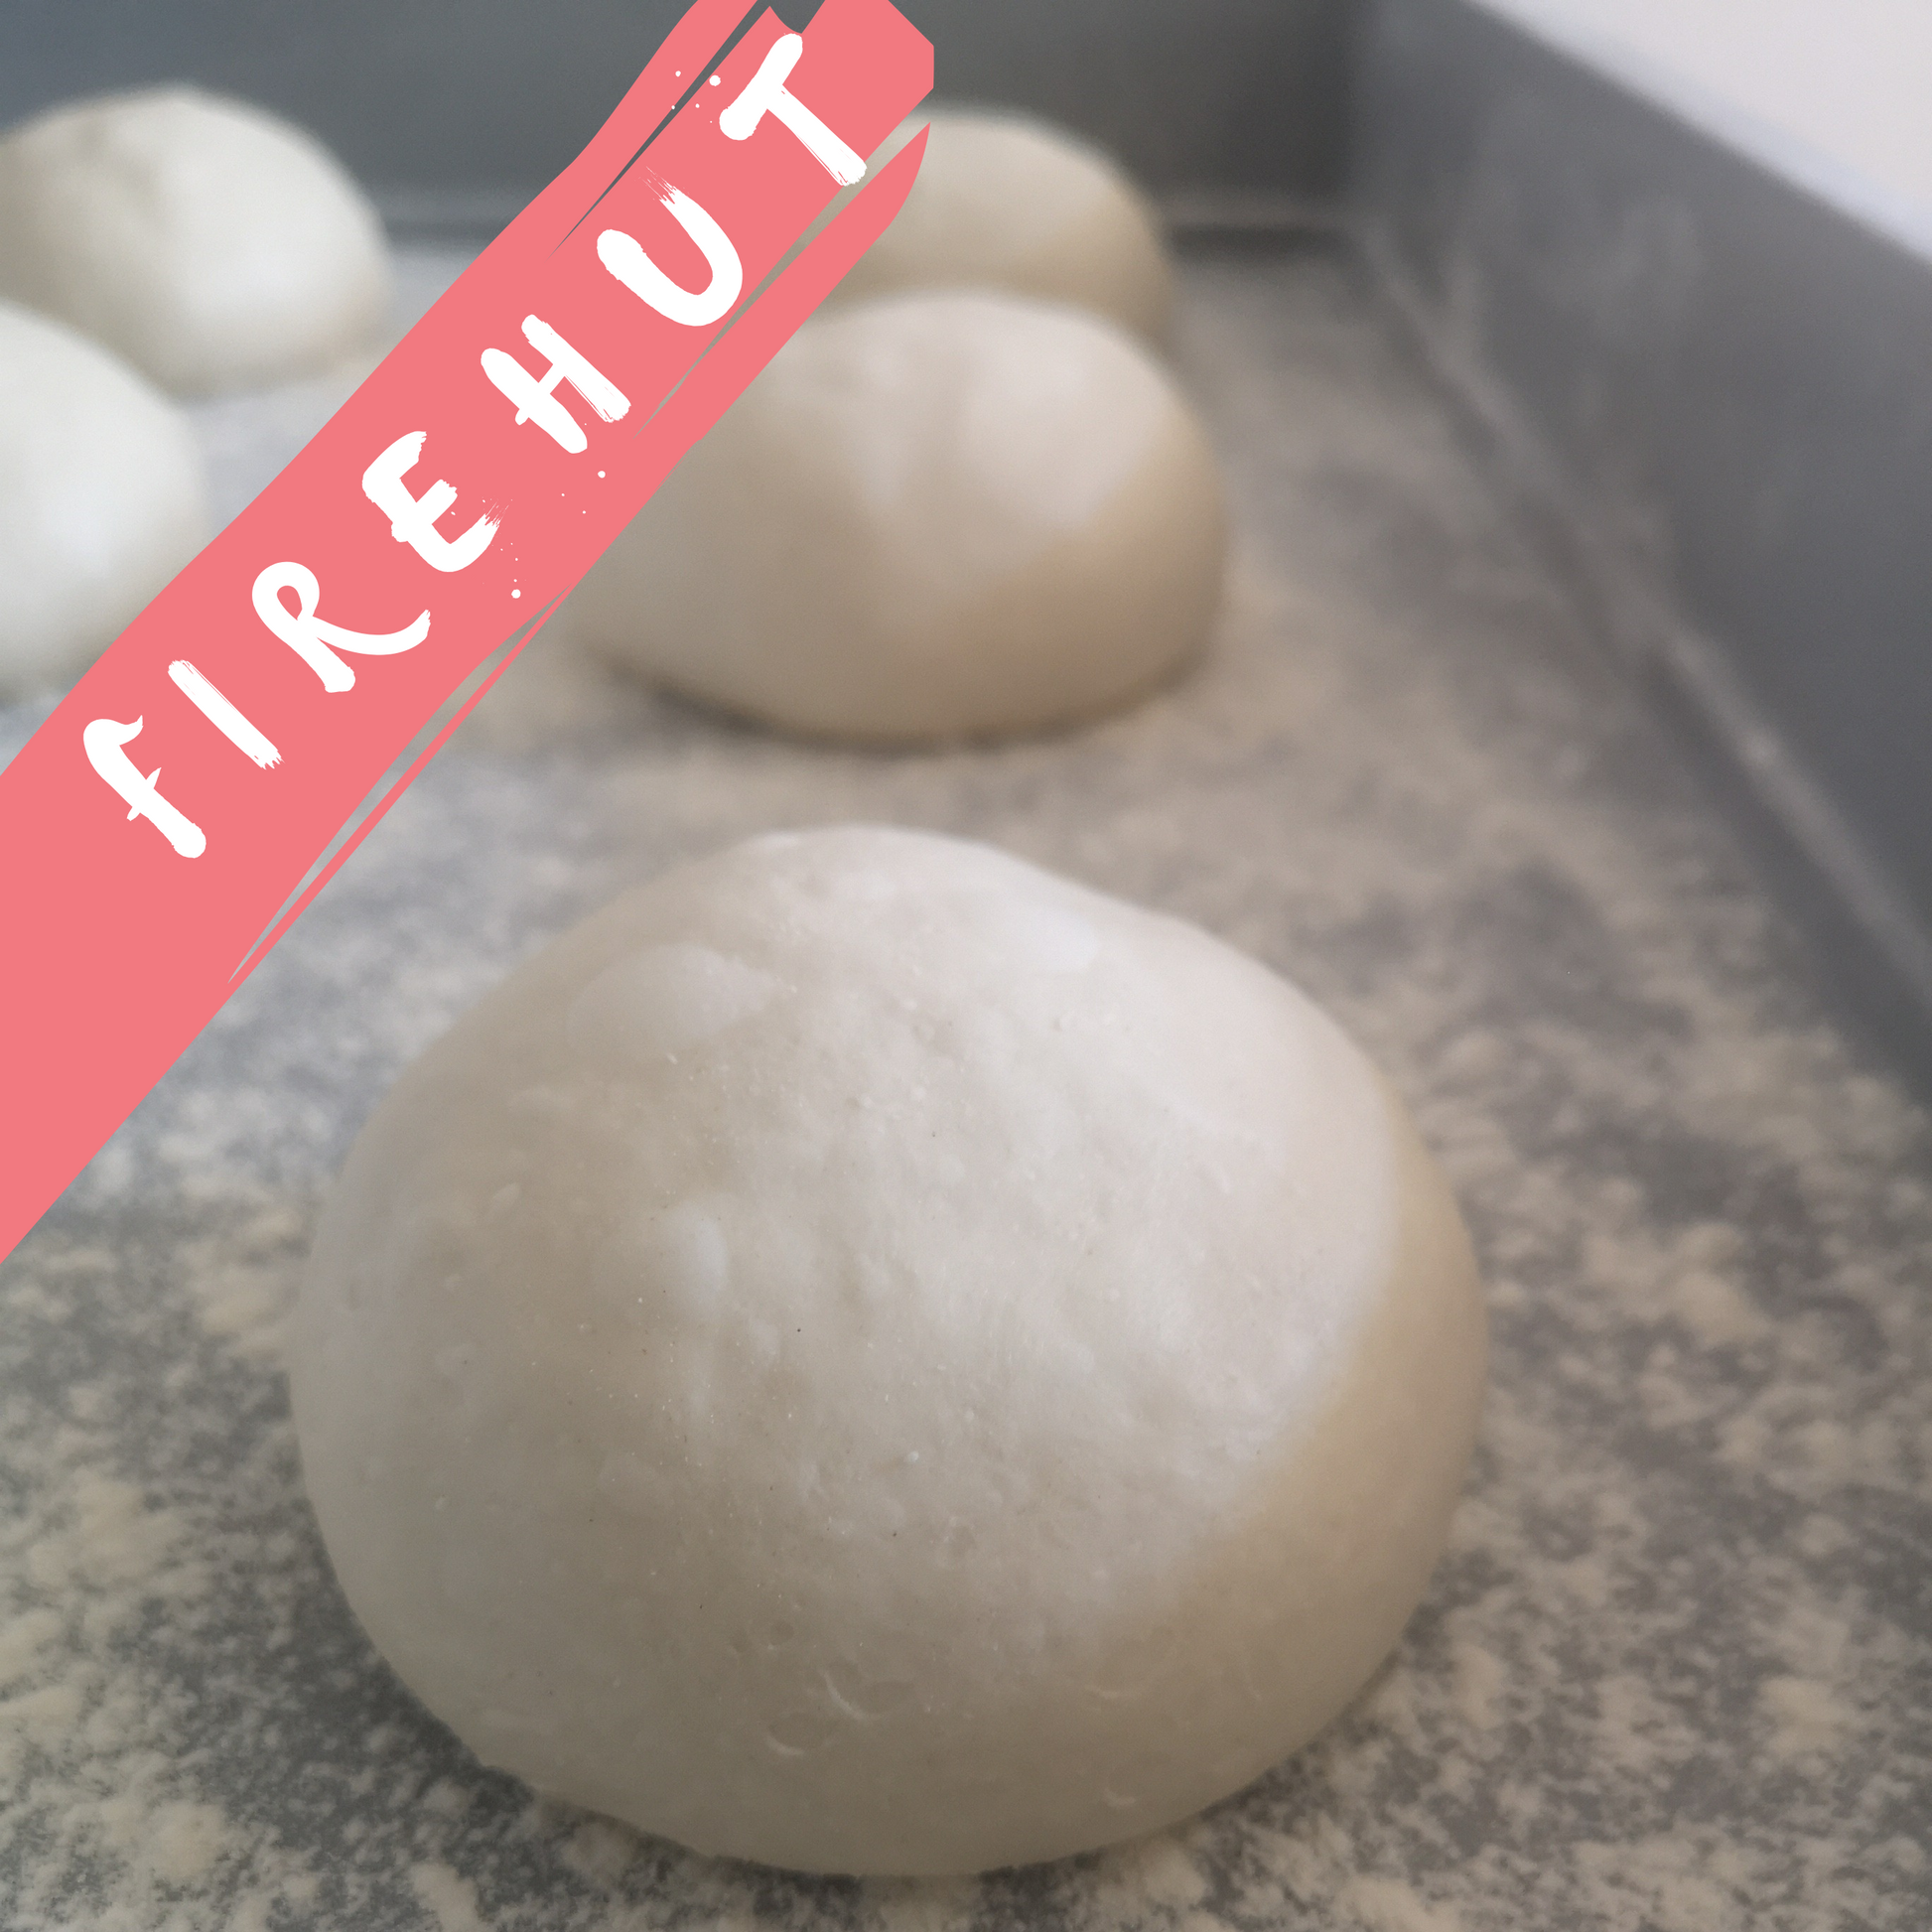 Firehut sourdough pizza dough ball